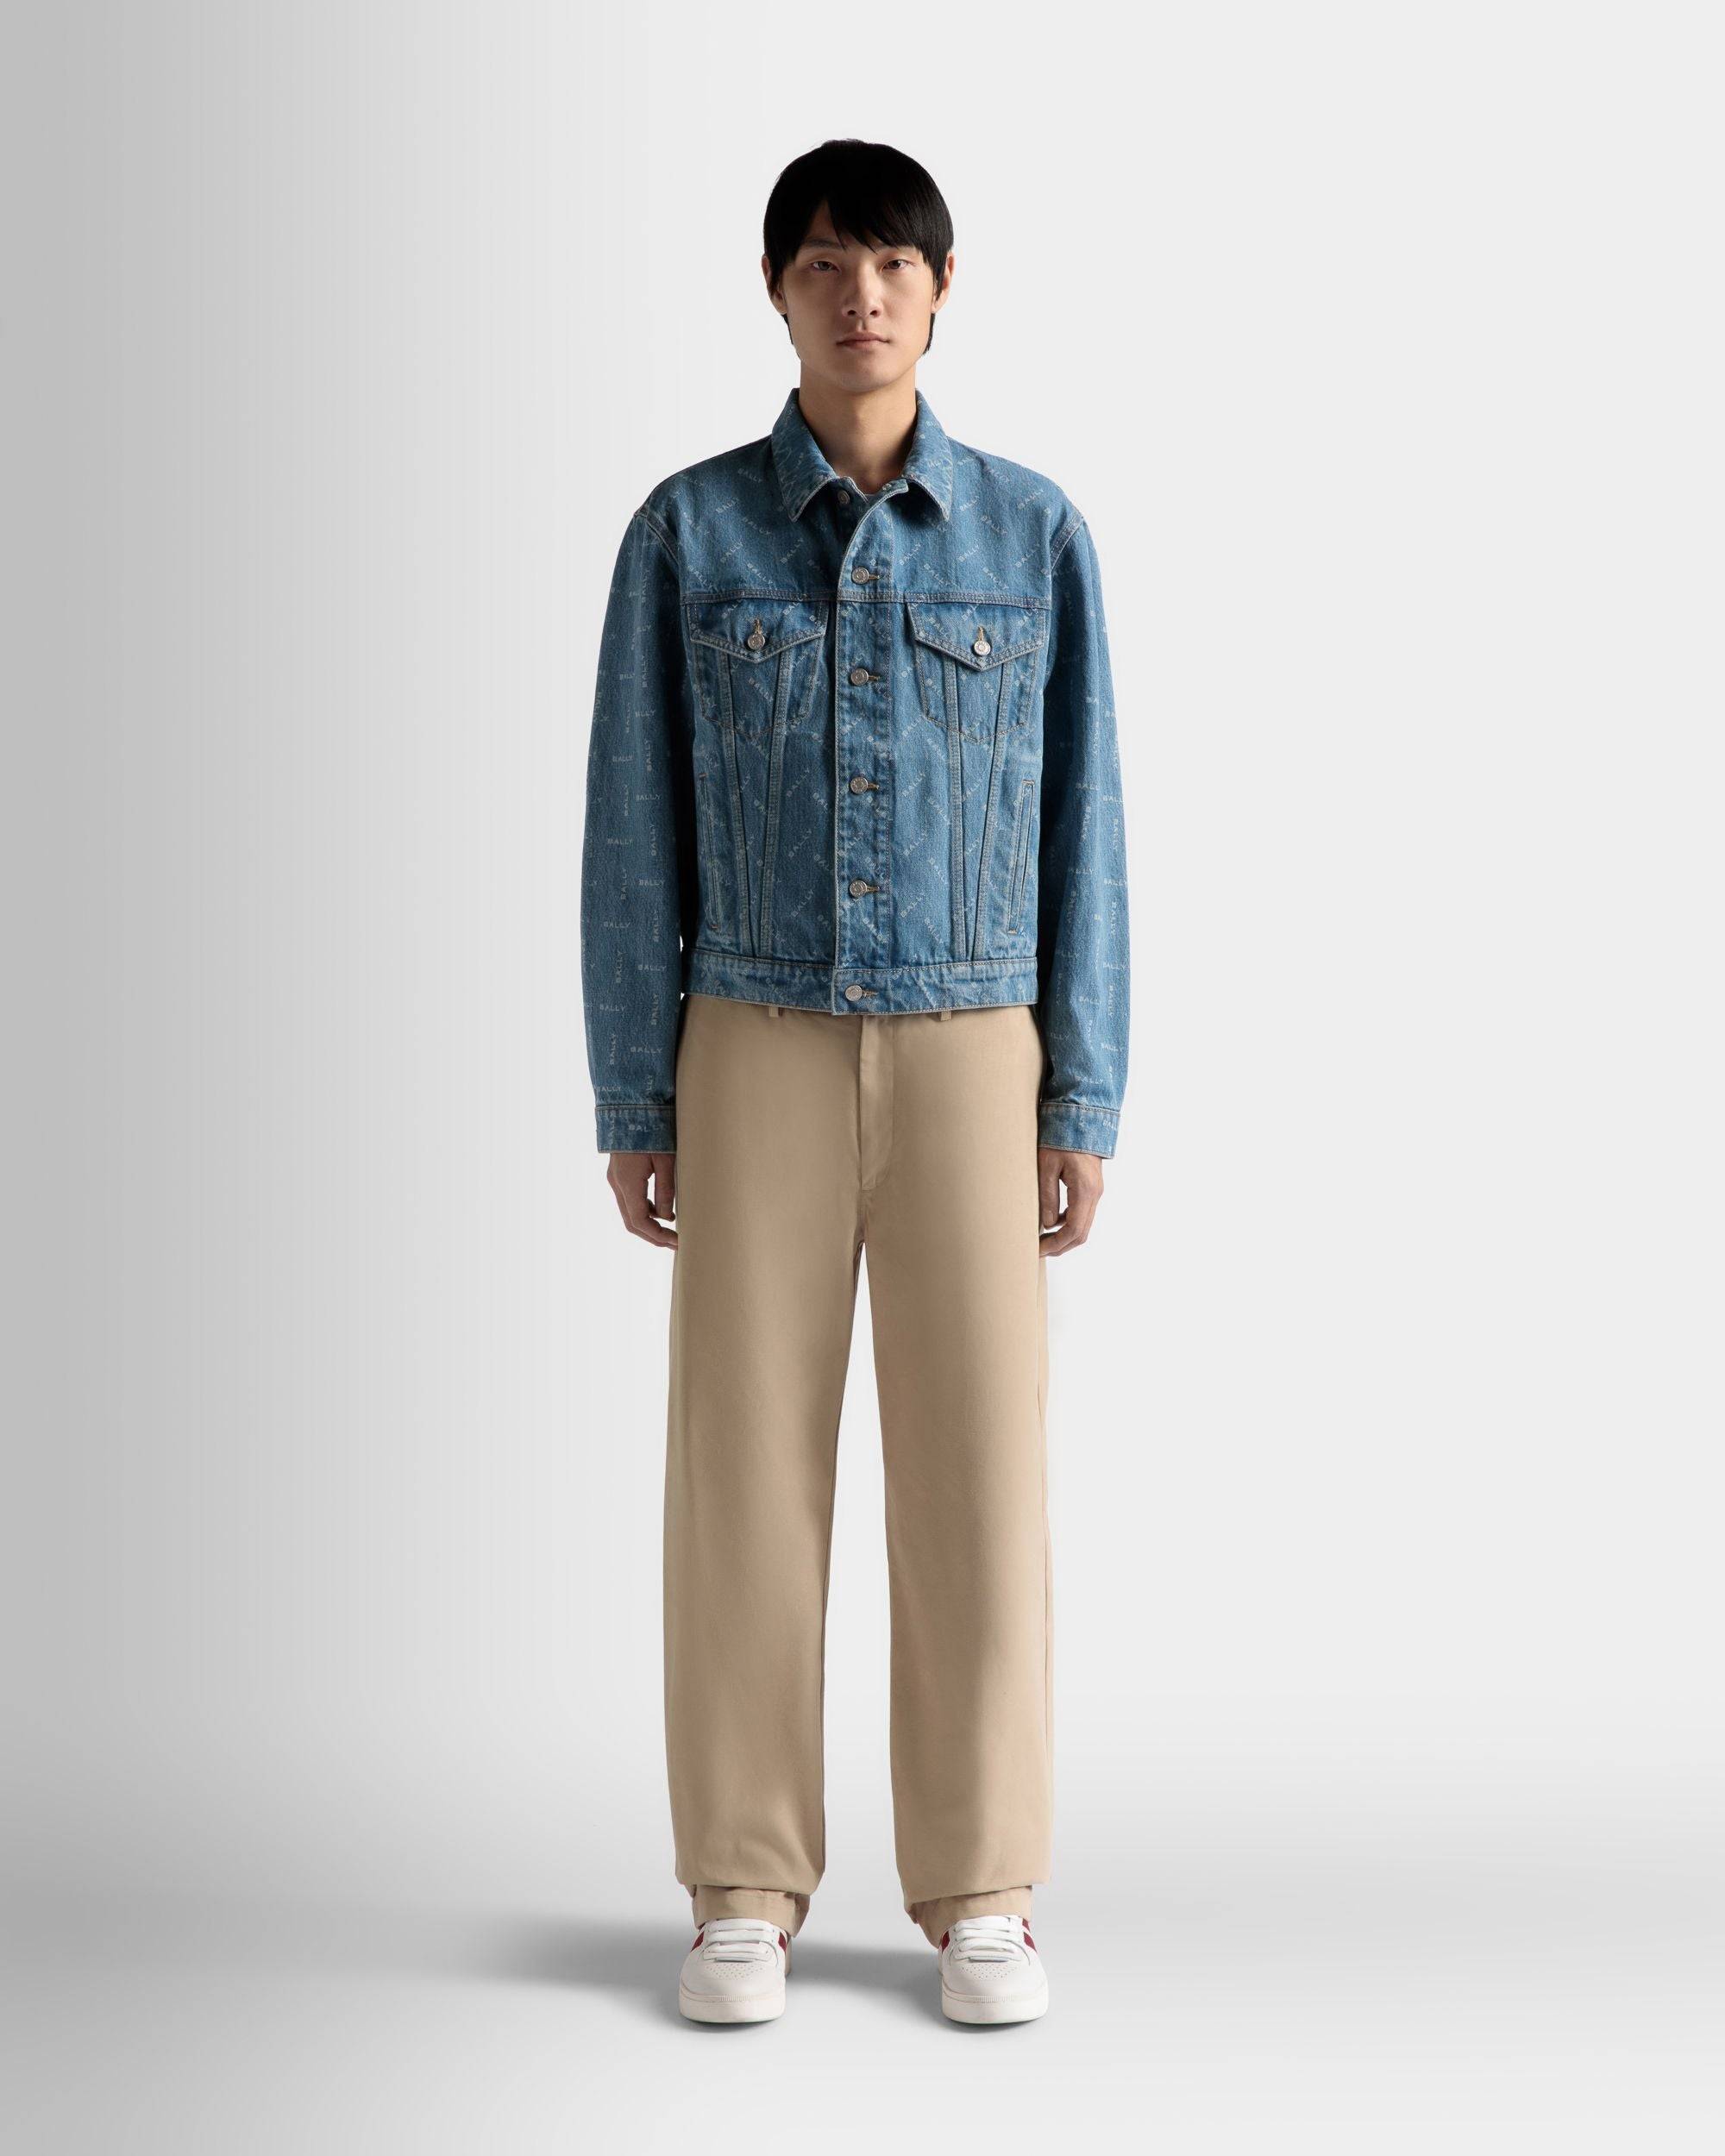 Herren-Jeansjacke aus hellblauer Baumwolle | Bally | Model getragen Vorderseite